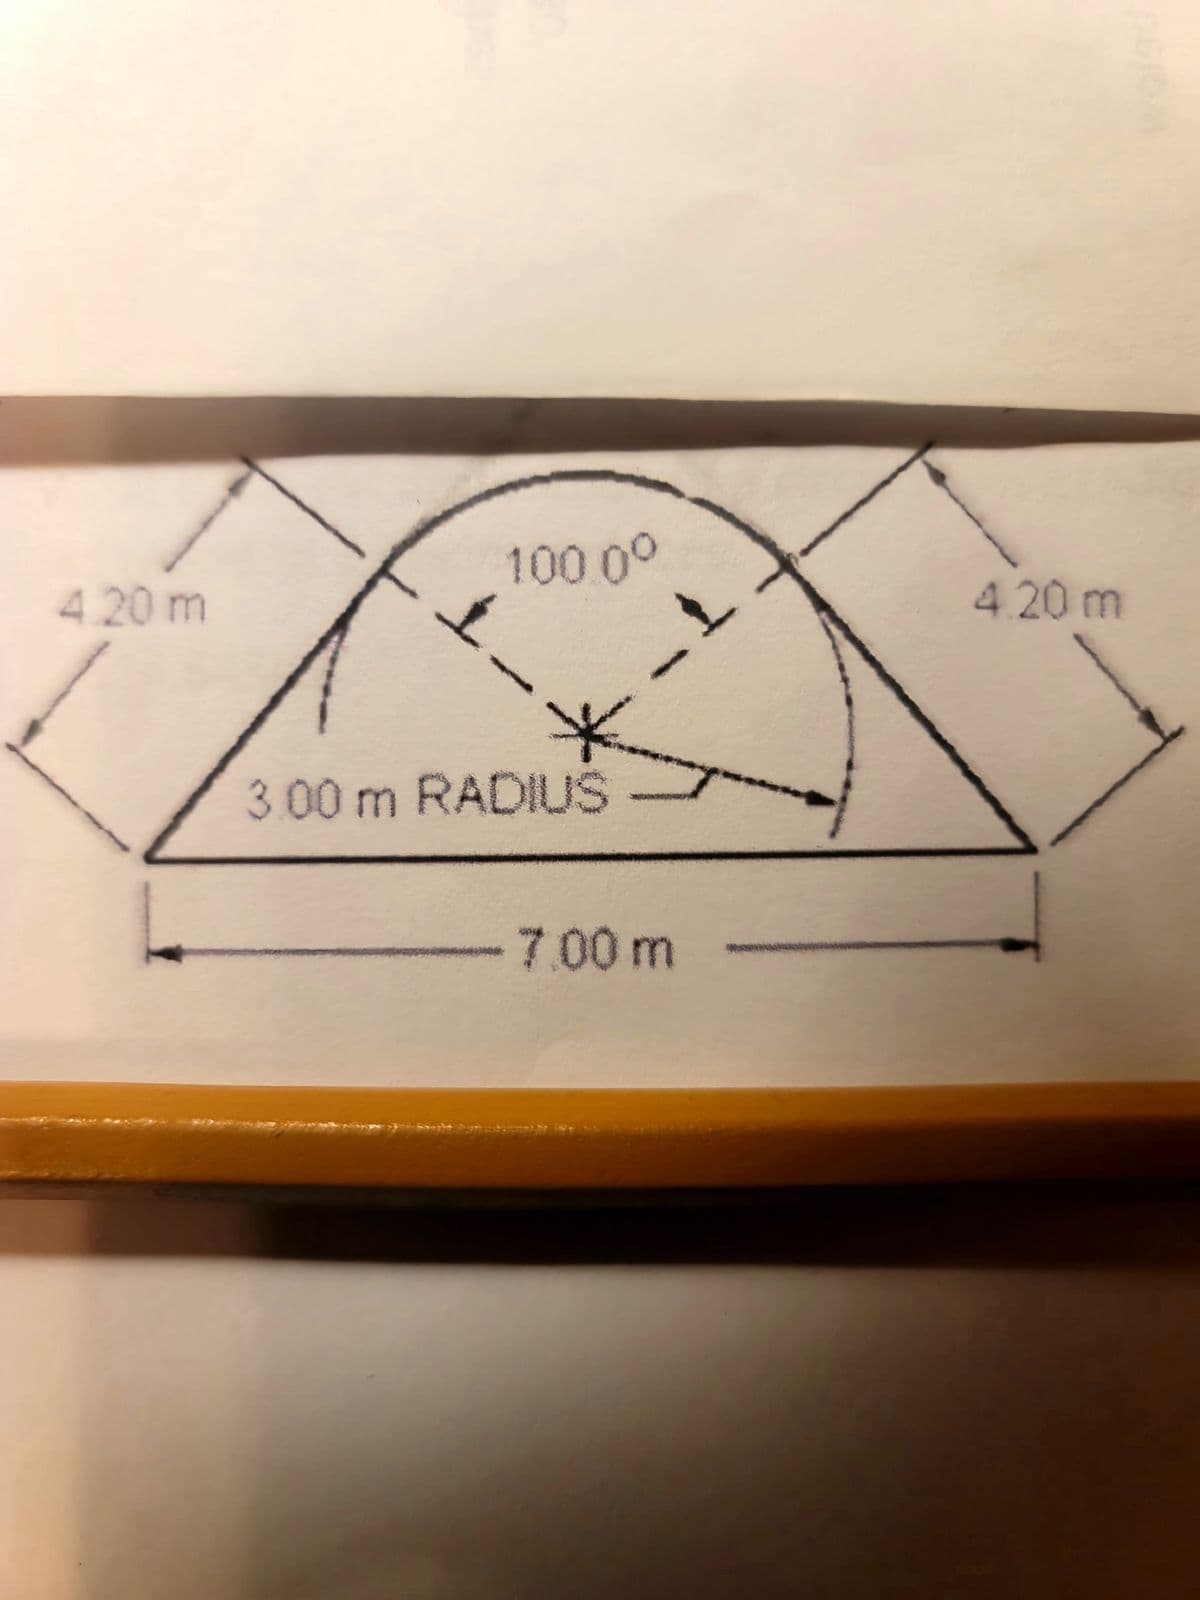 4.20 m
100.00
1-
*
3.00 m RADIUS
7.00 m
T
4.20 m